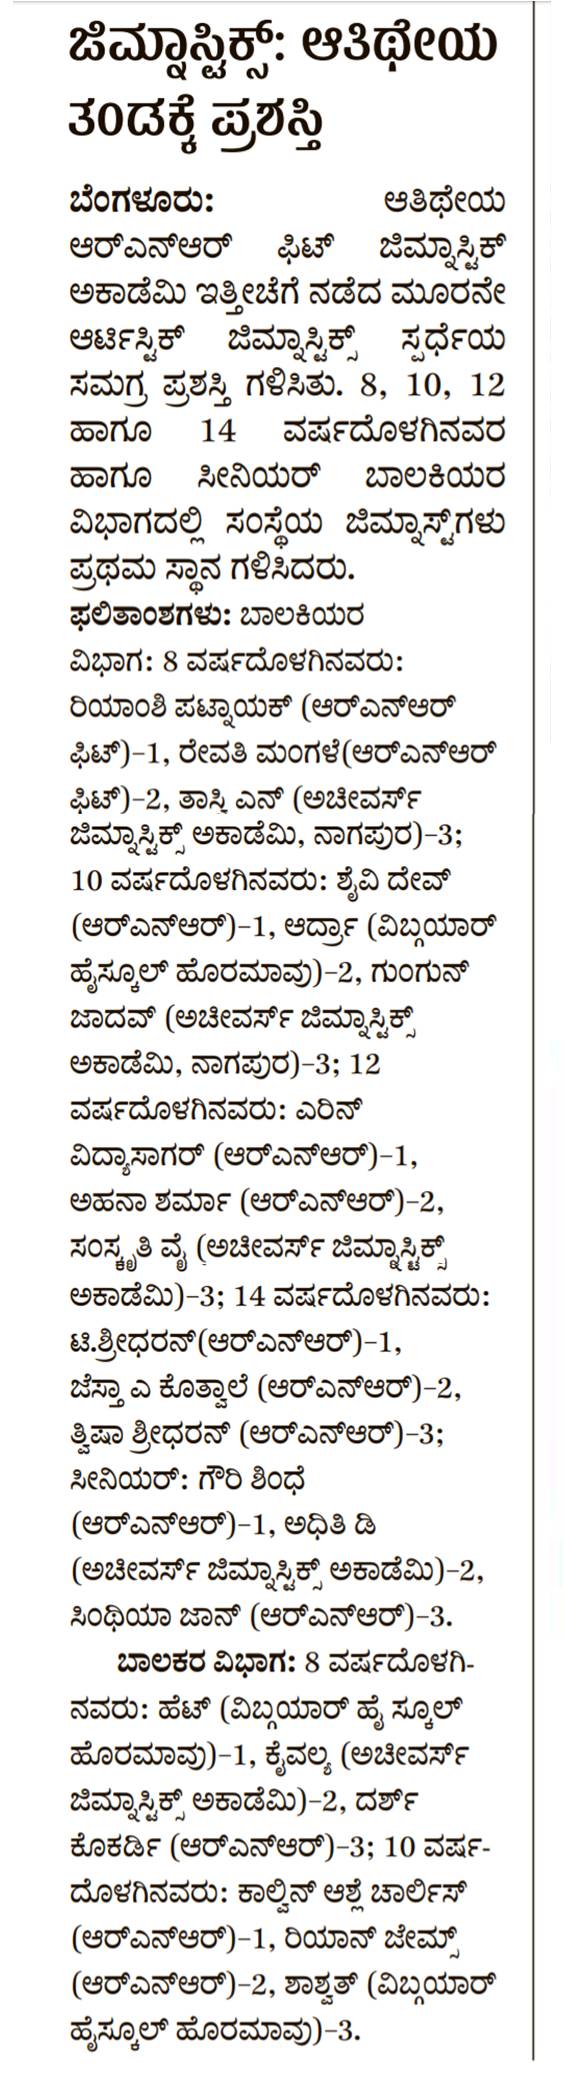 Prajavani page 13, Feb 2019